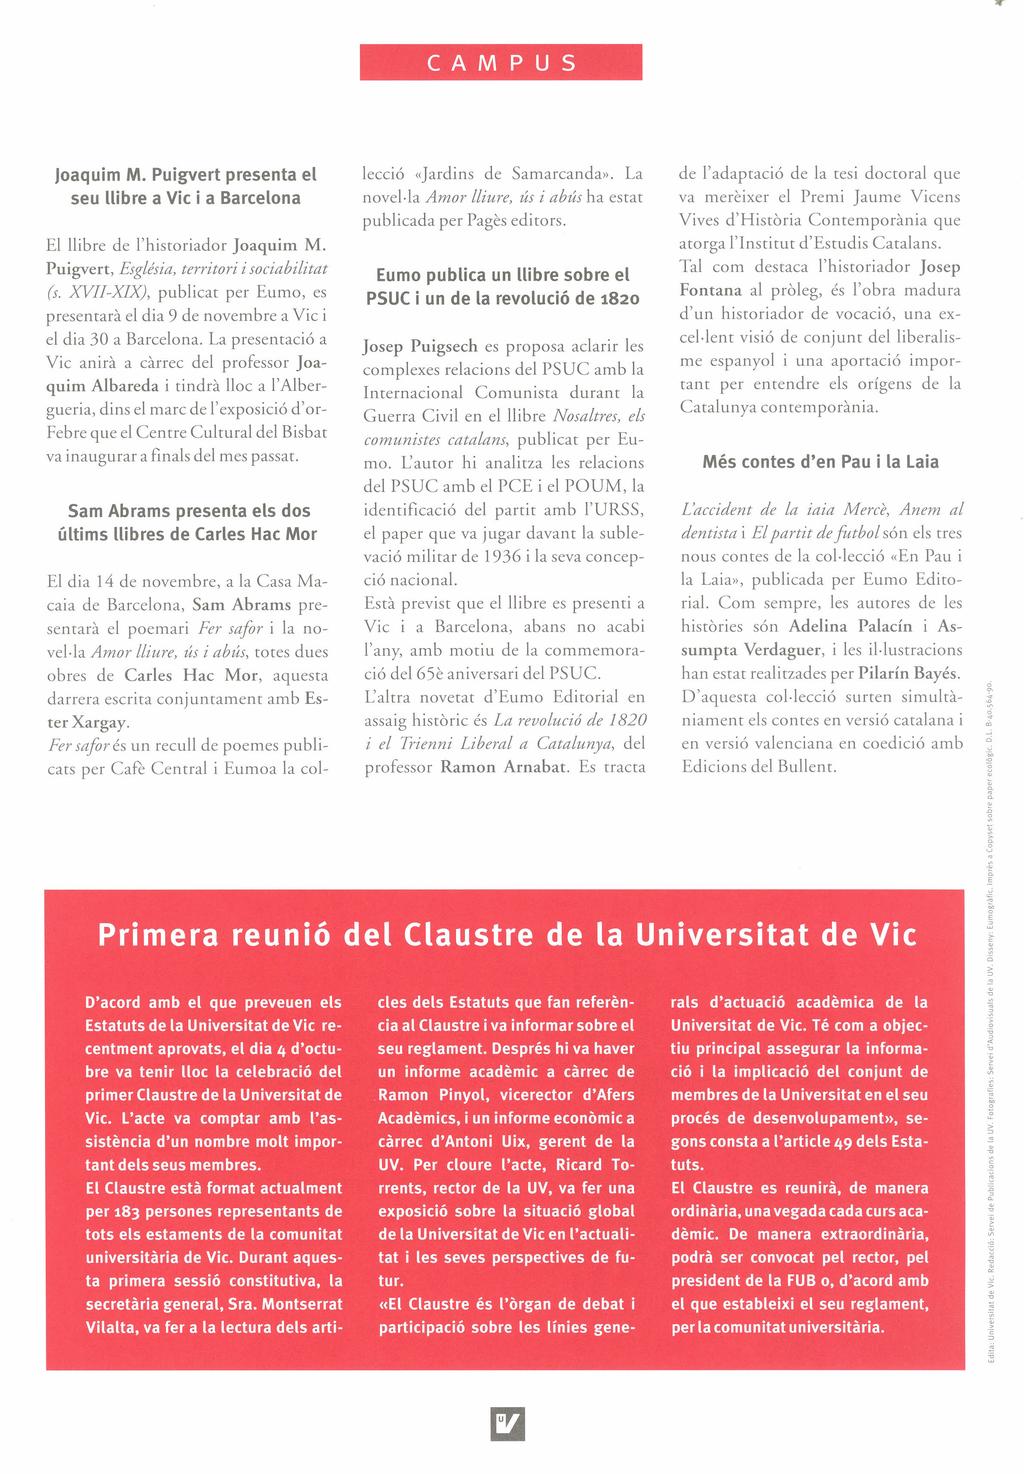 loaqulm M. Puigvert presenta el seu llibre a Vic i a Barcelona El llibre de I'historiador Joaquim M. Puigvert, Església, territori i sociabilitat (s.